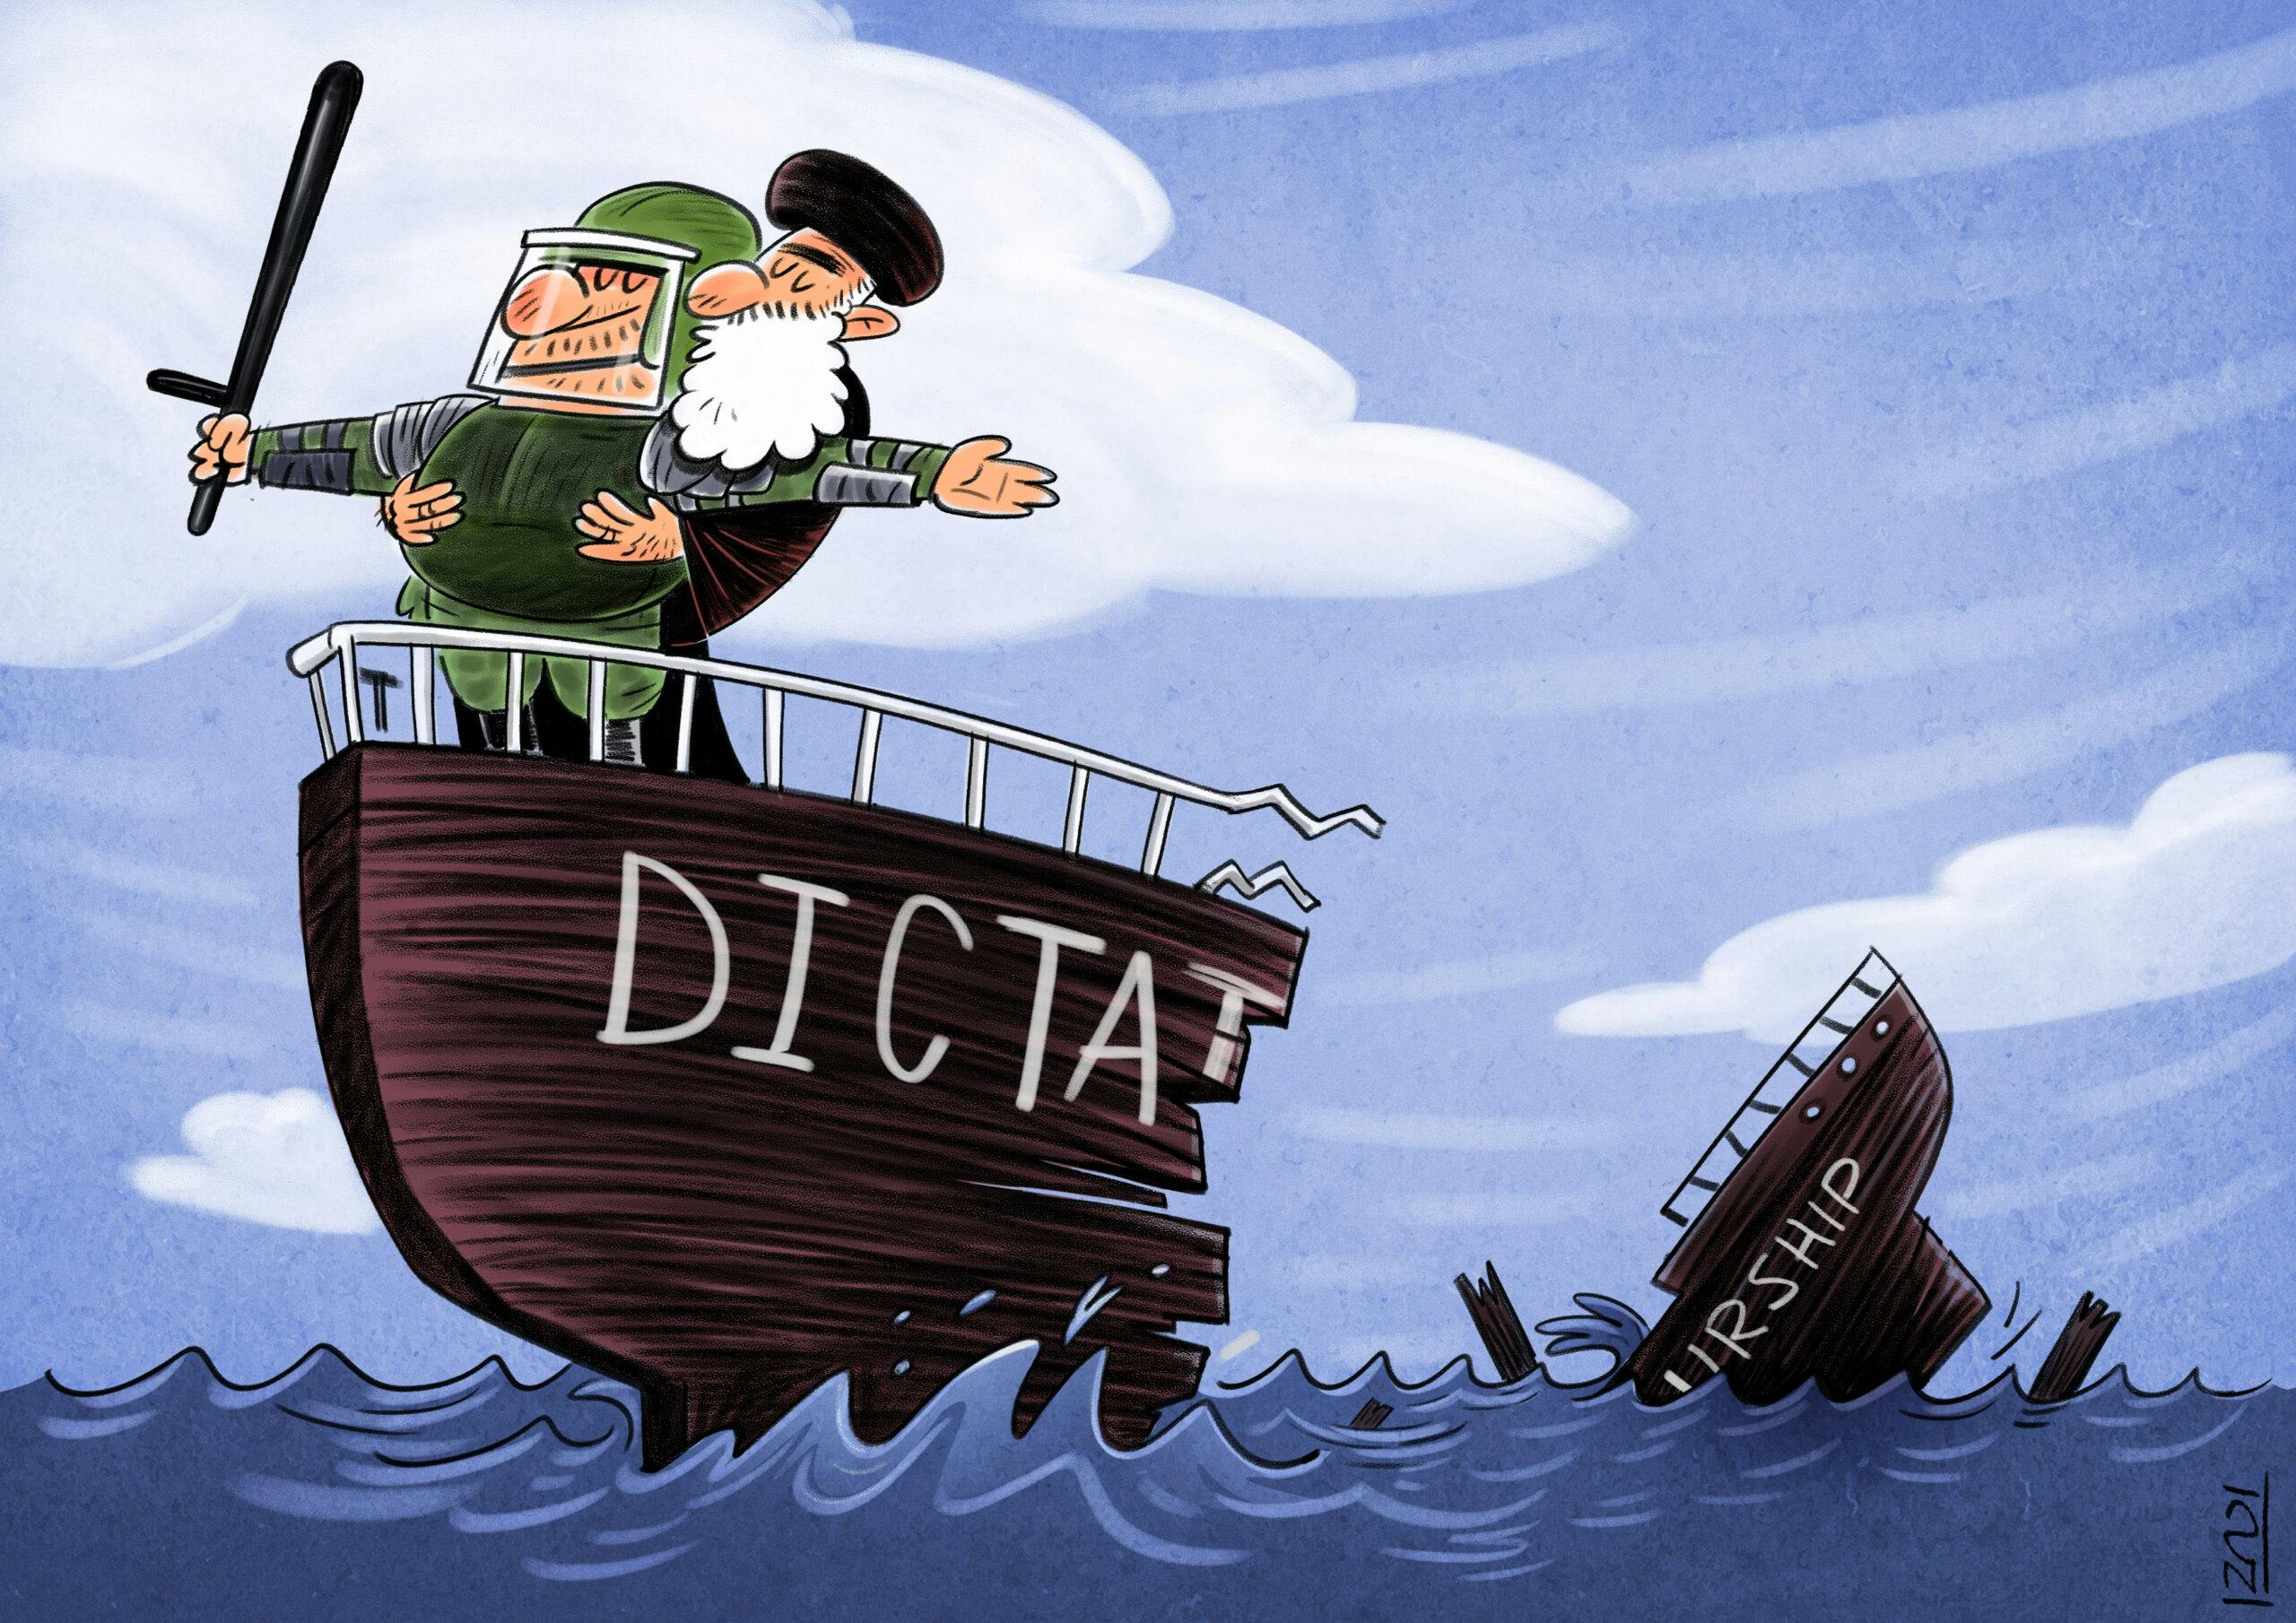 خامنه‌ای سربازی باتوم در دست را در آغوش دارد. در حالی که سوار بر یک کشتی در حال غرق شدن است. روی کشتی نوشته Dictaturship